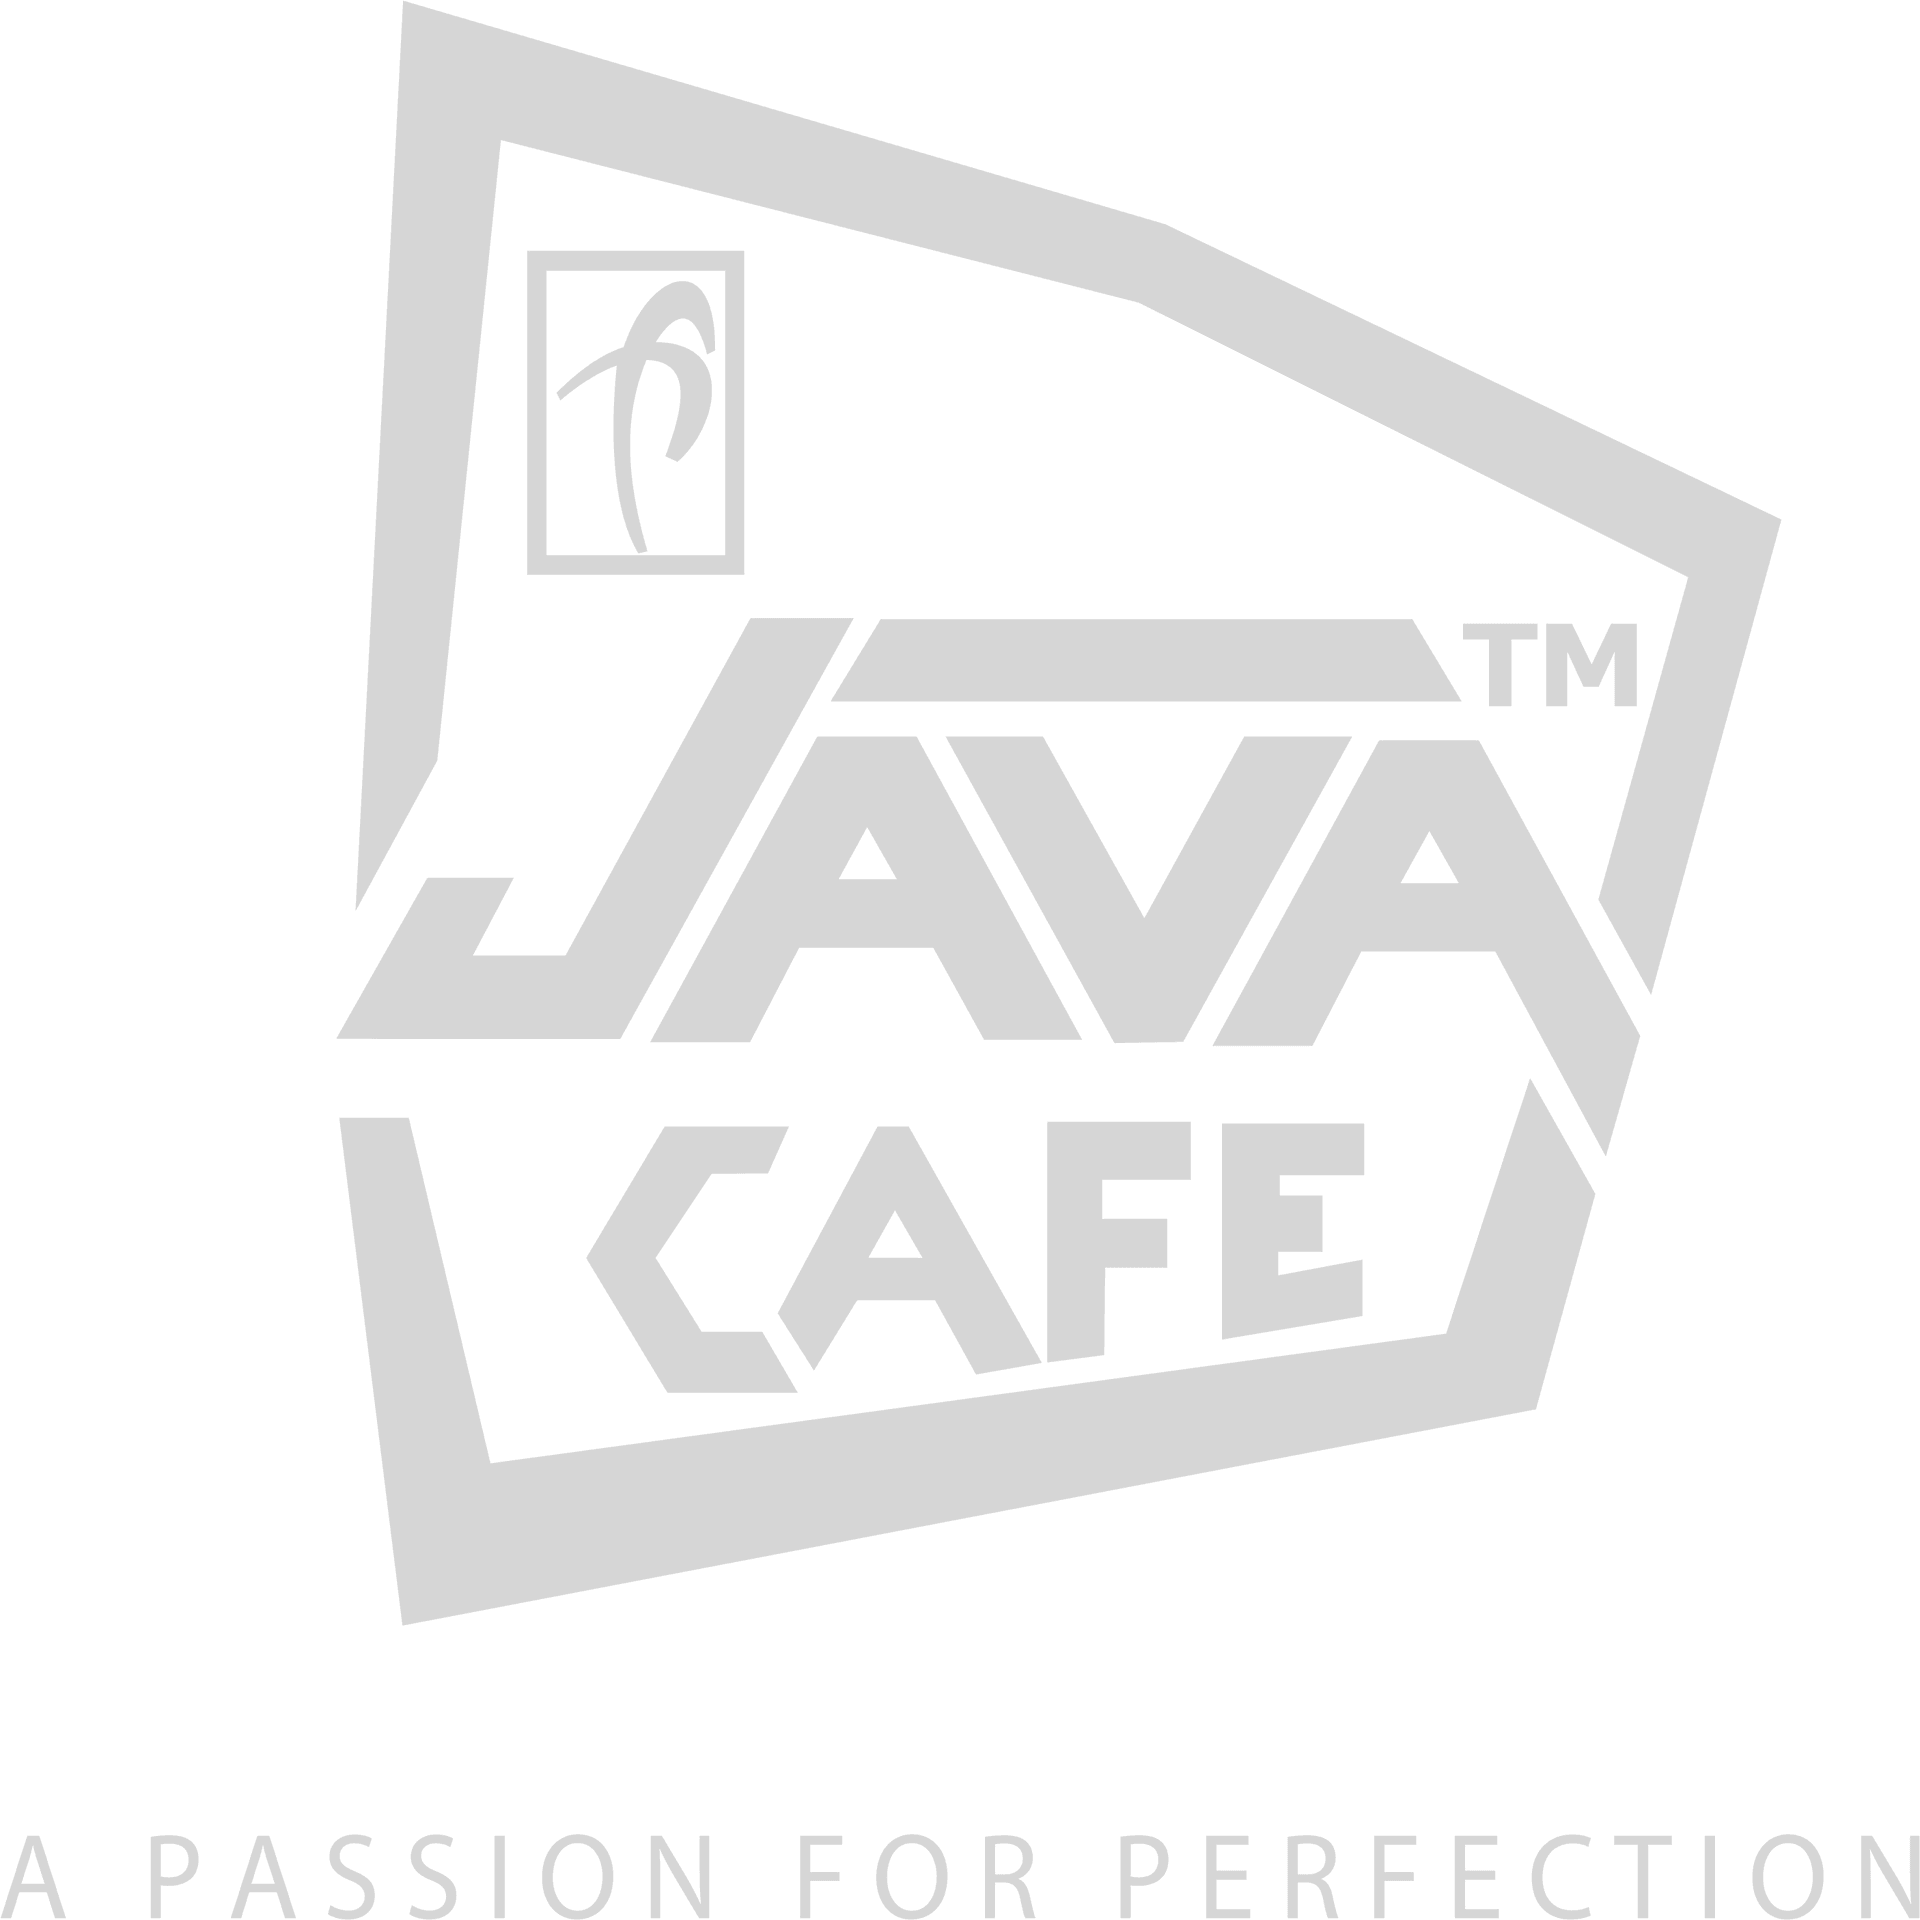 Java Cafe Logo Transparent Background PNG